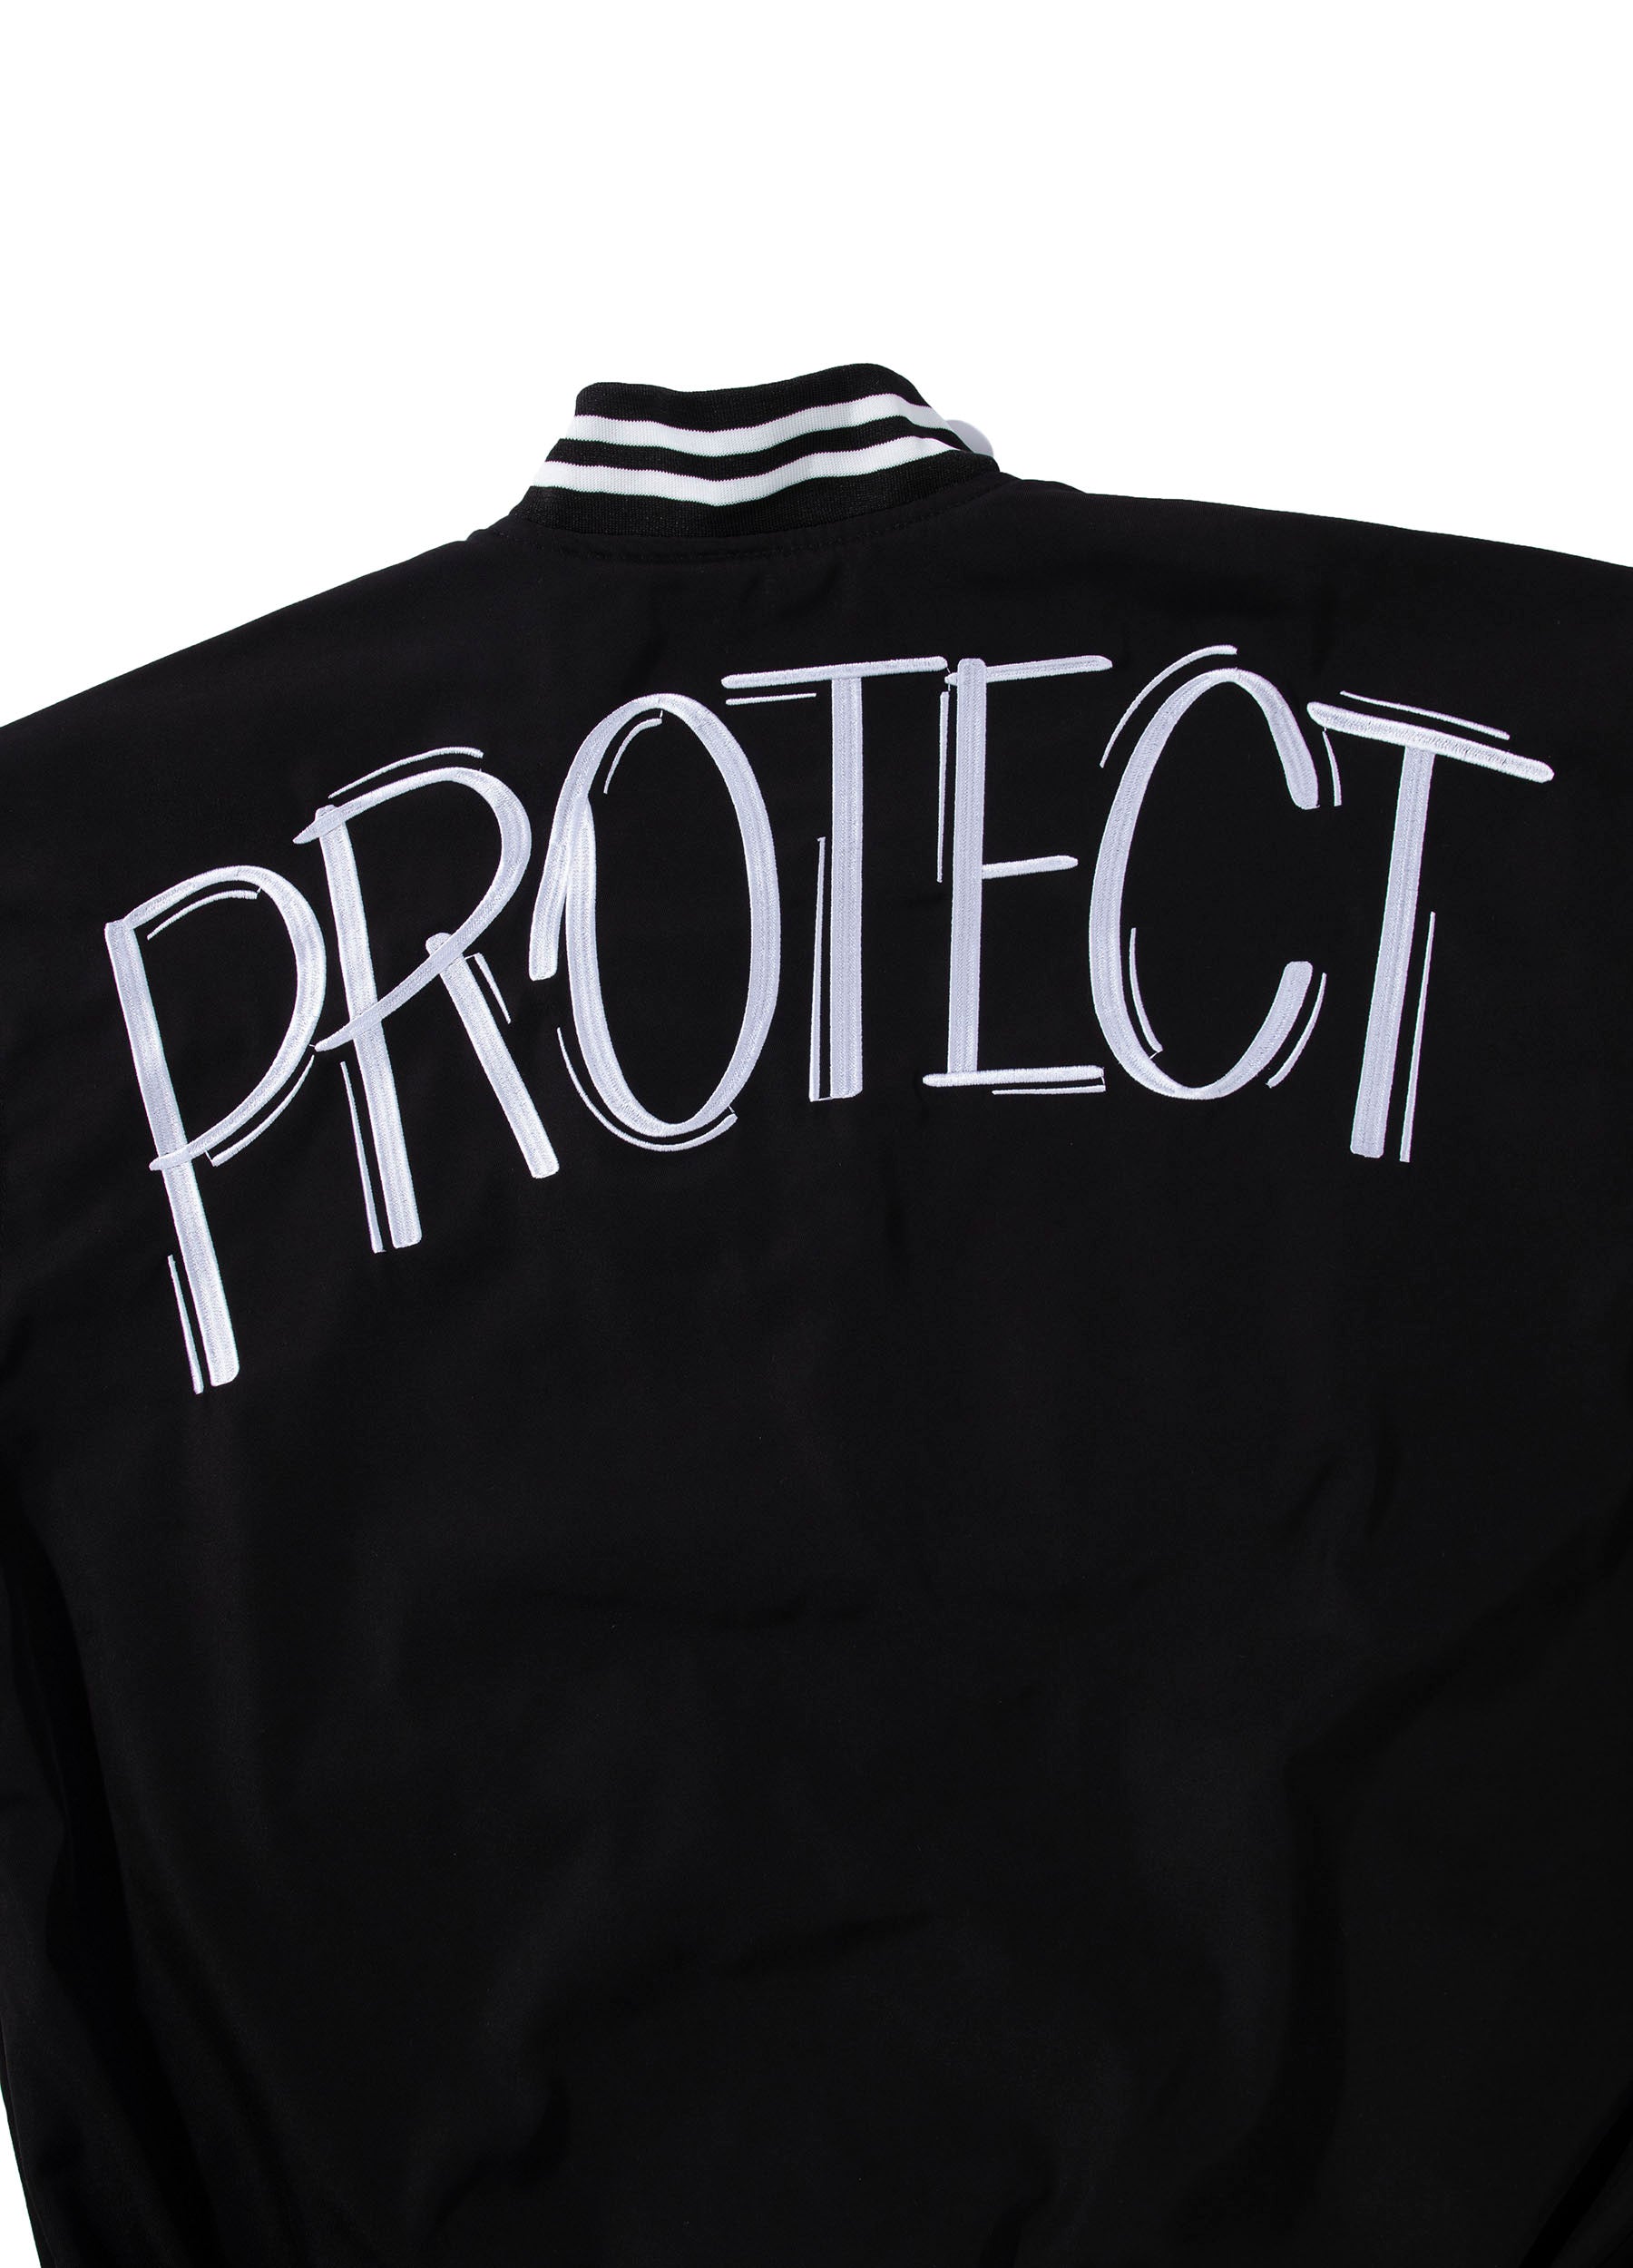 OOLA Unisex Varsity Bomber Baseball Jacket Endangered Animal Protection Theme Coat